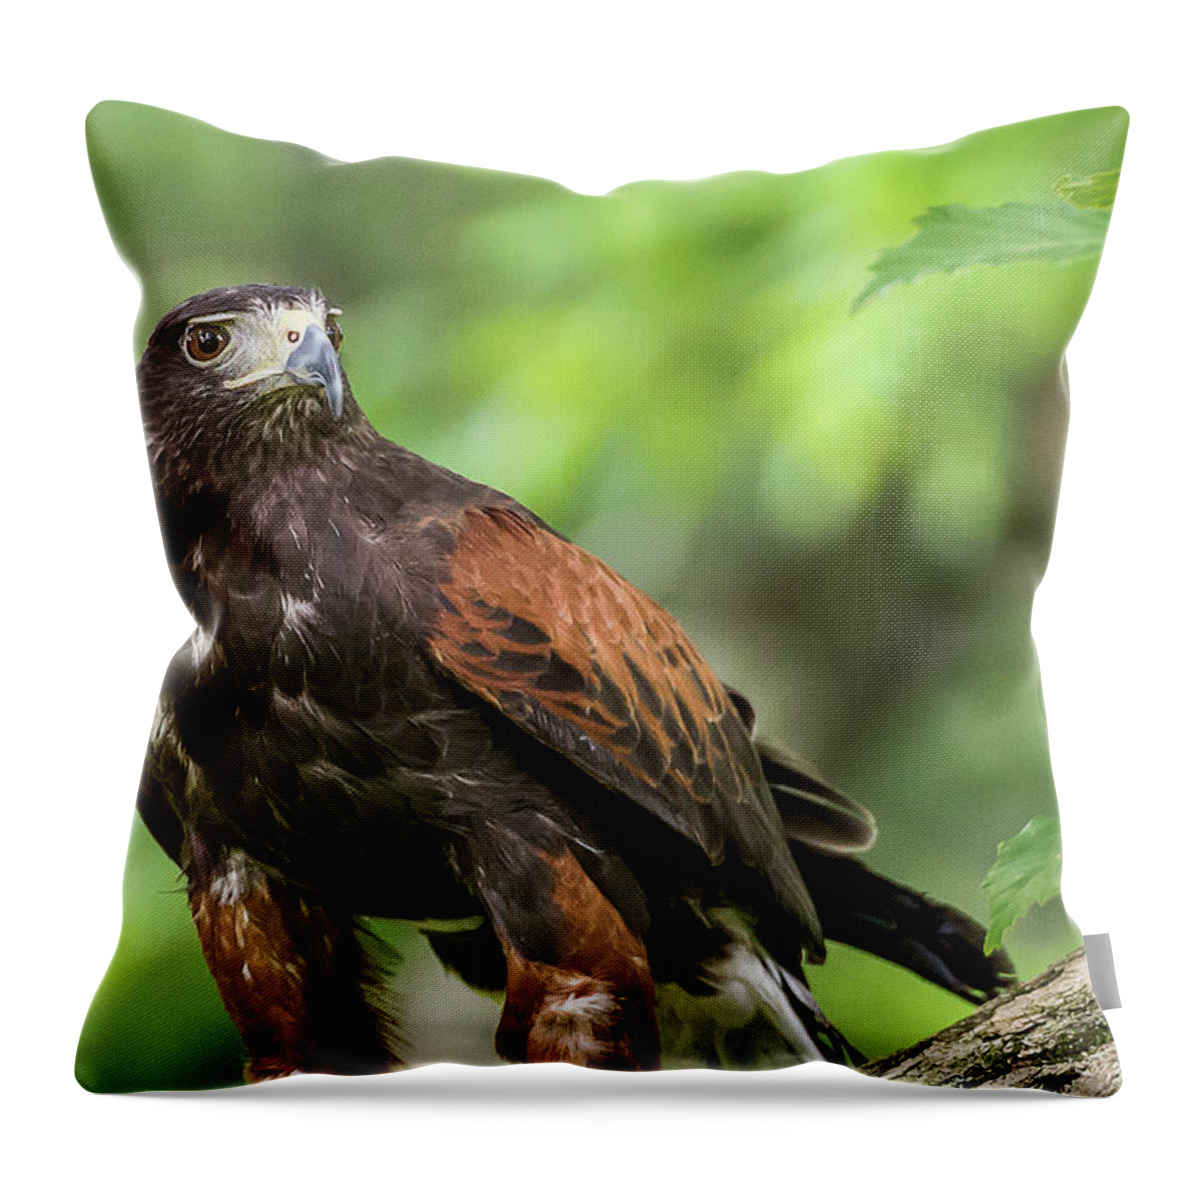 Raptors Owl Hawk Throw Pillow featuring the photograph Hawk by Robert Miller